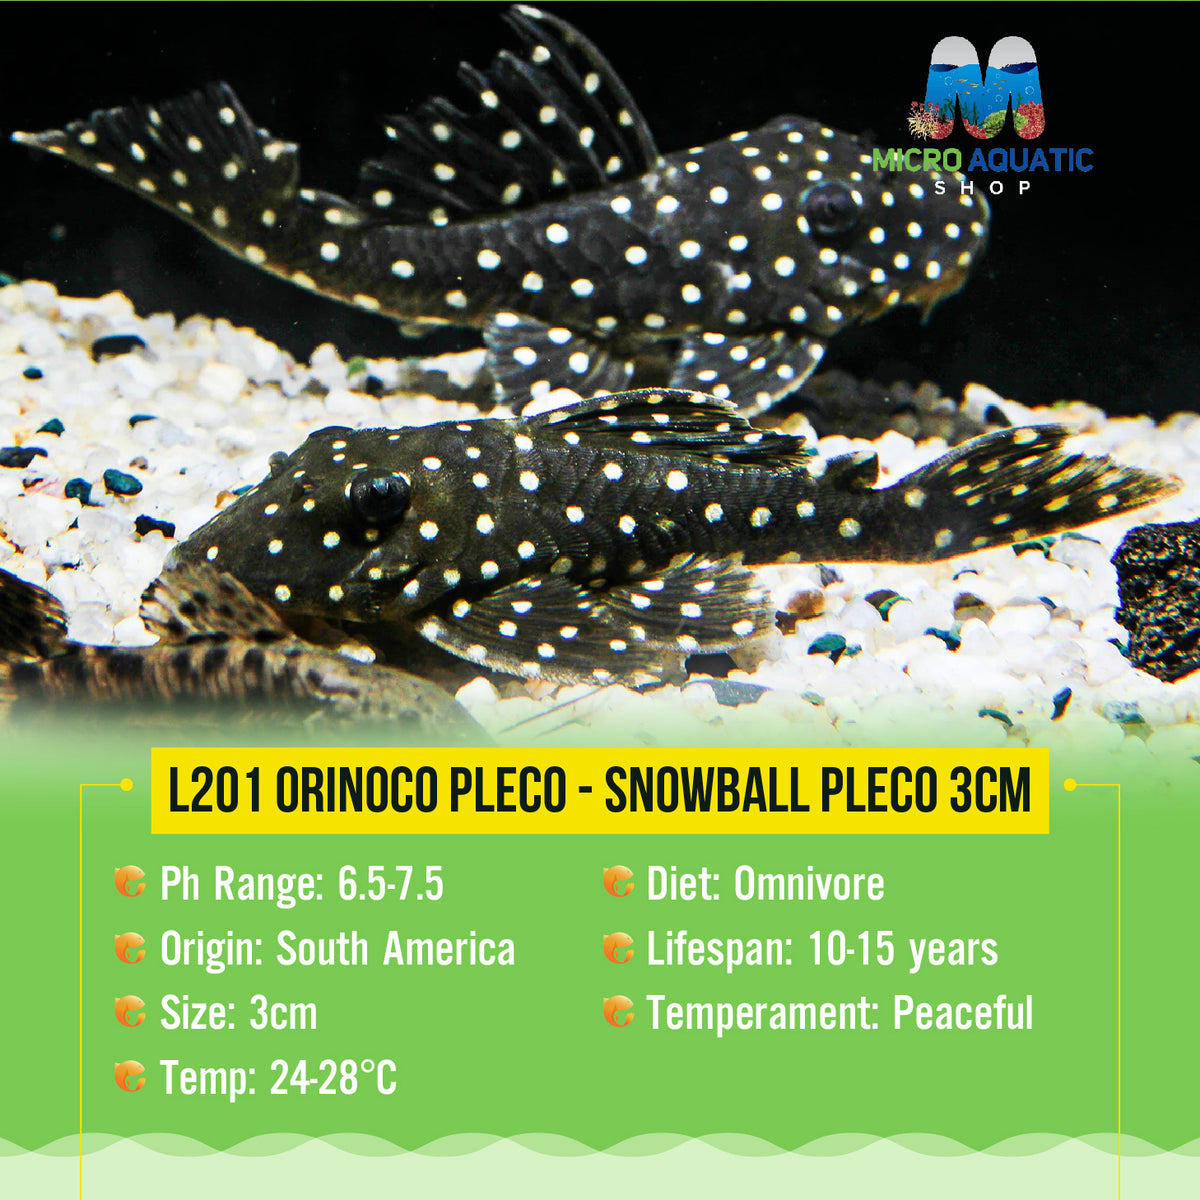 L201 Orinoco Pleco - Snowball Pleco 3cm